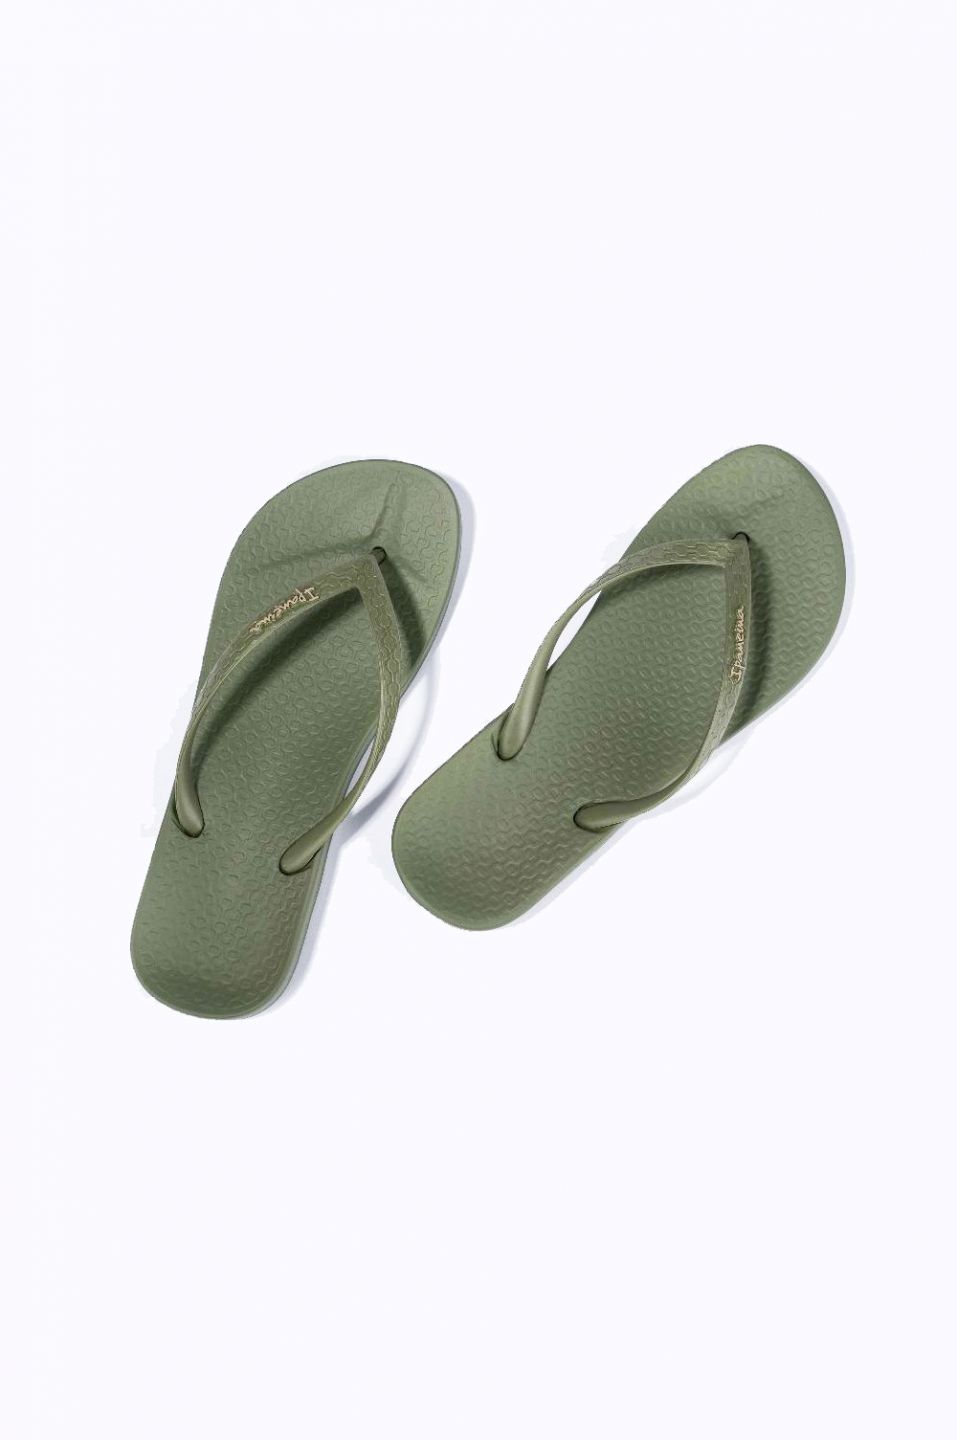 Ipanema Children Slippers, Sole Type: PU at Rs 50/pair in Mumbai | ID:  23023189630